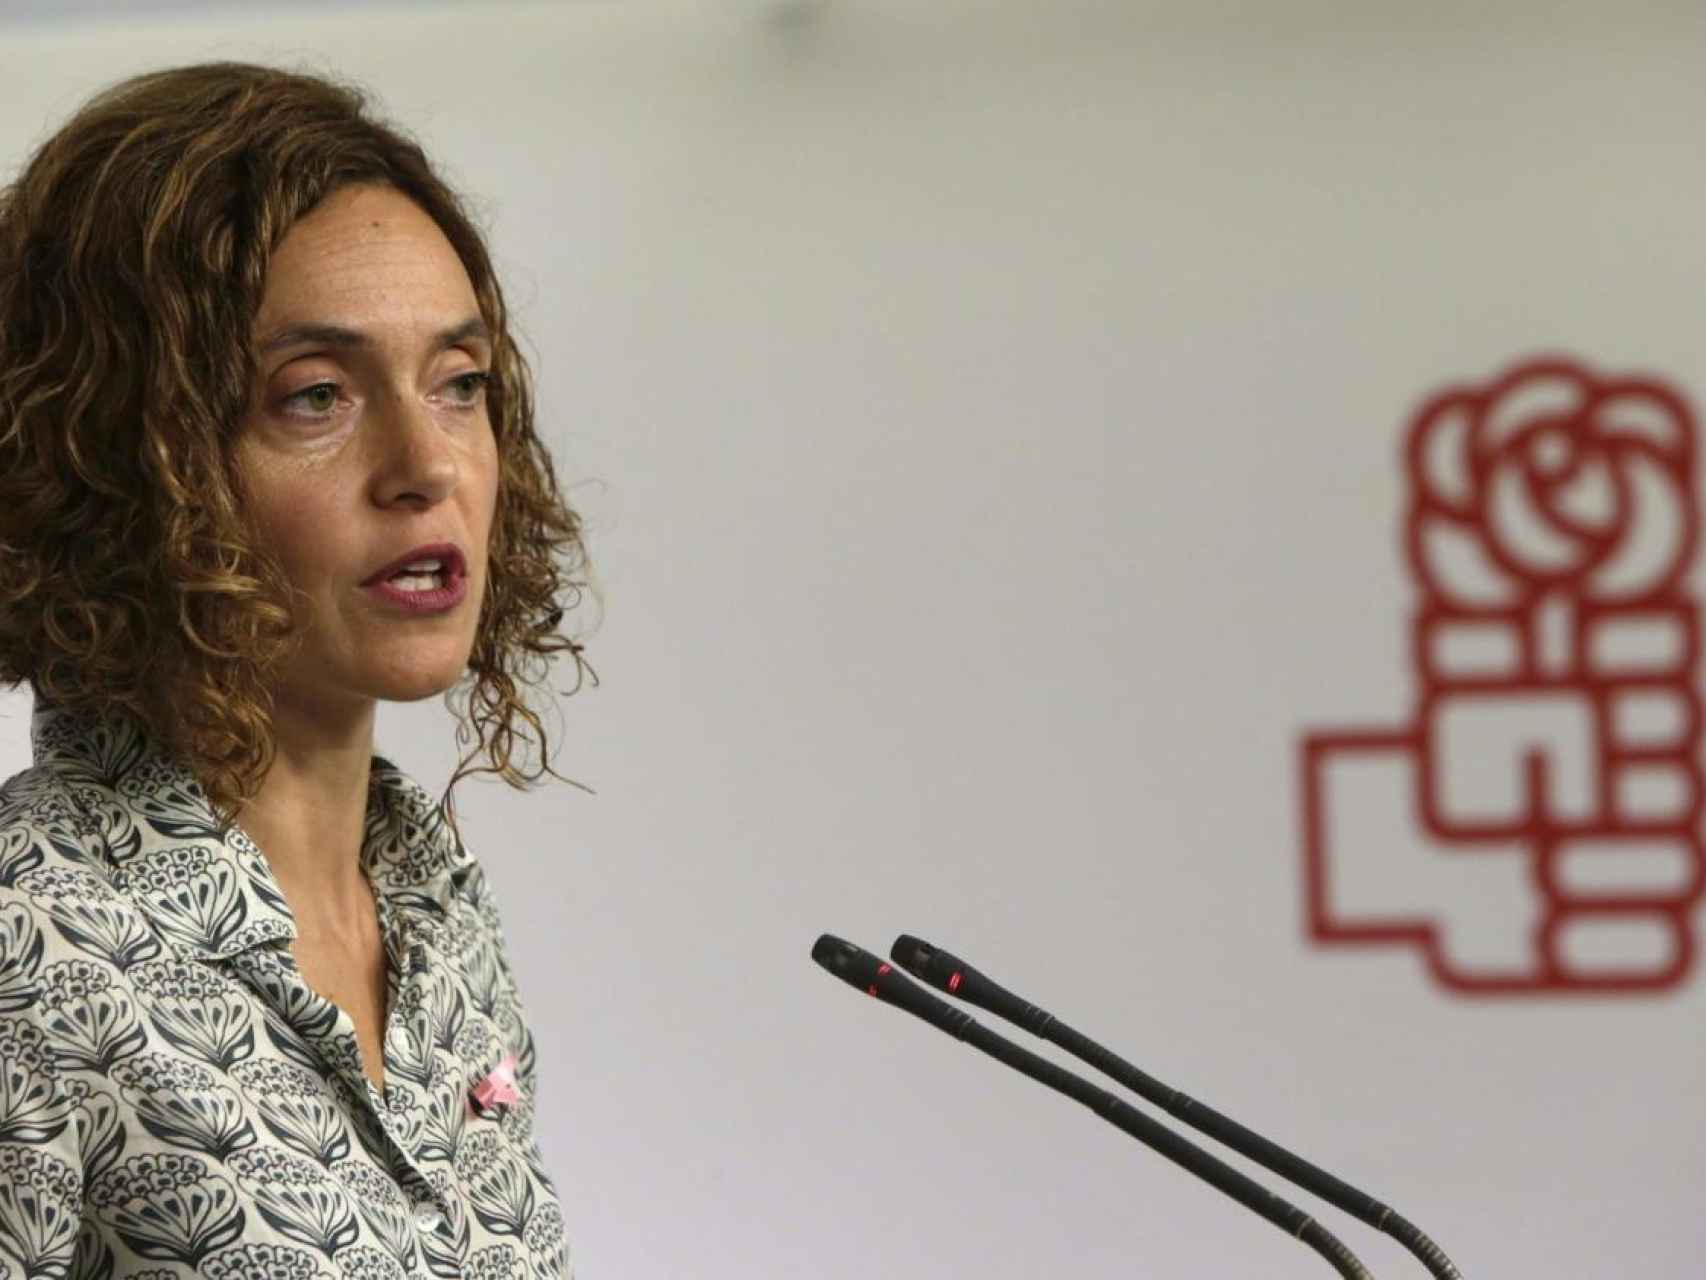 Meritxell Batet: Vería con buenos ojos el acercamiento a Cataluña de los políticos presos